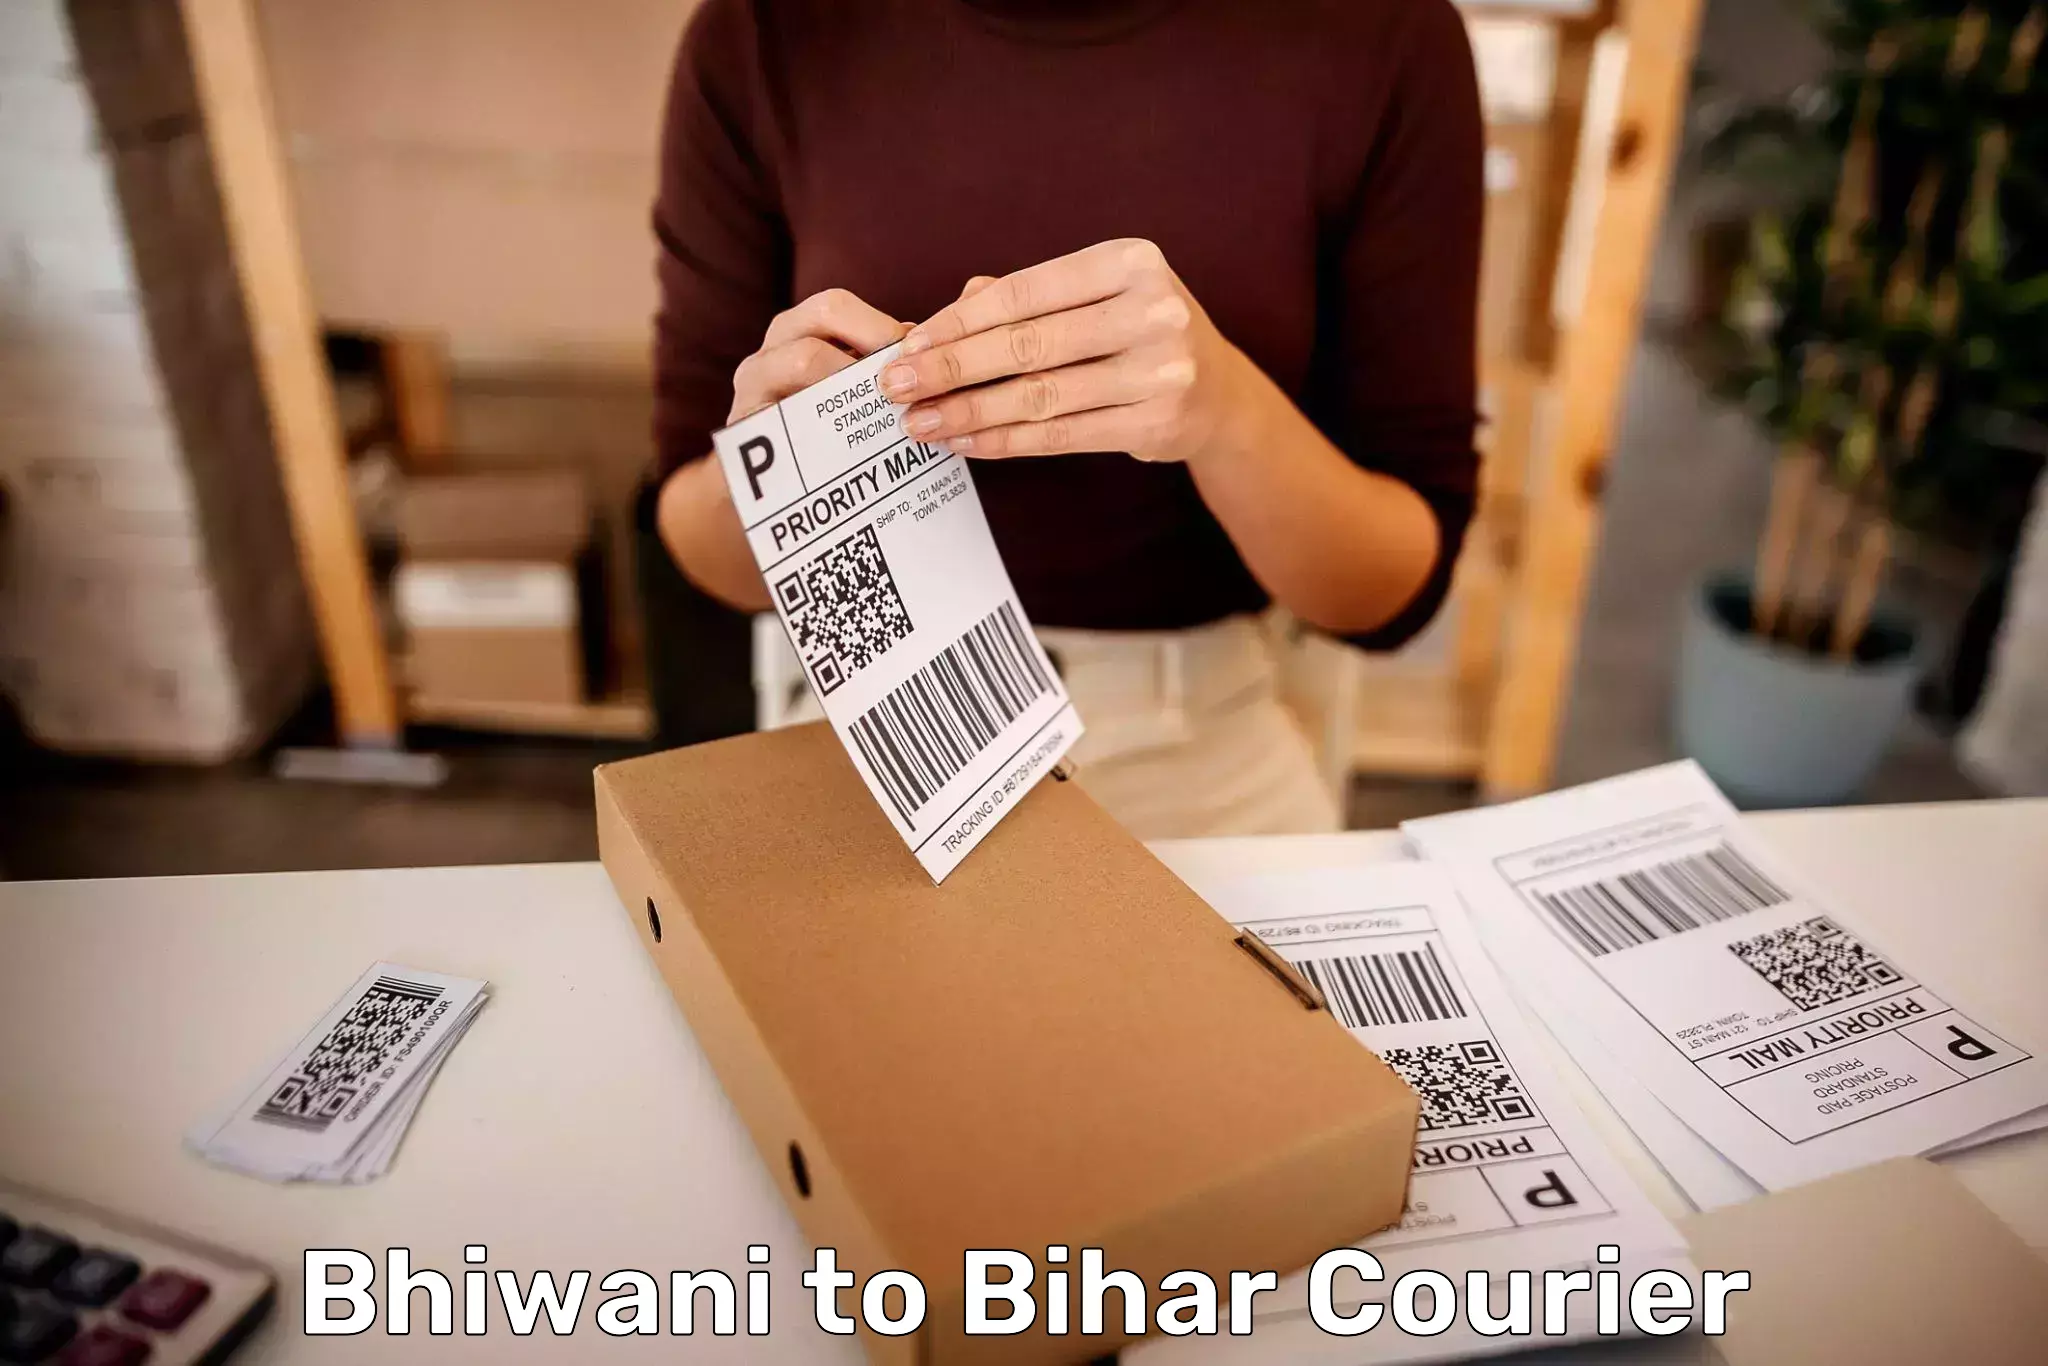 Luggage delivery network Bhiwani to Mashrakh